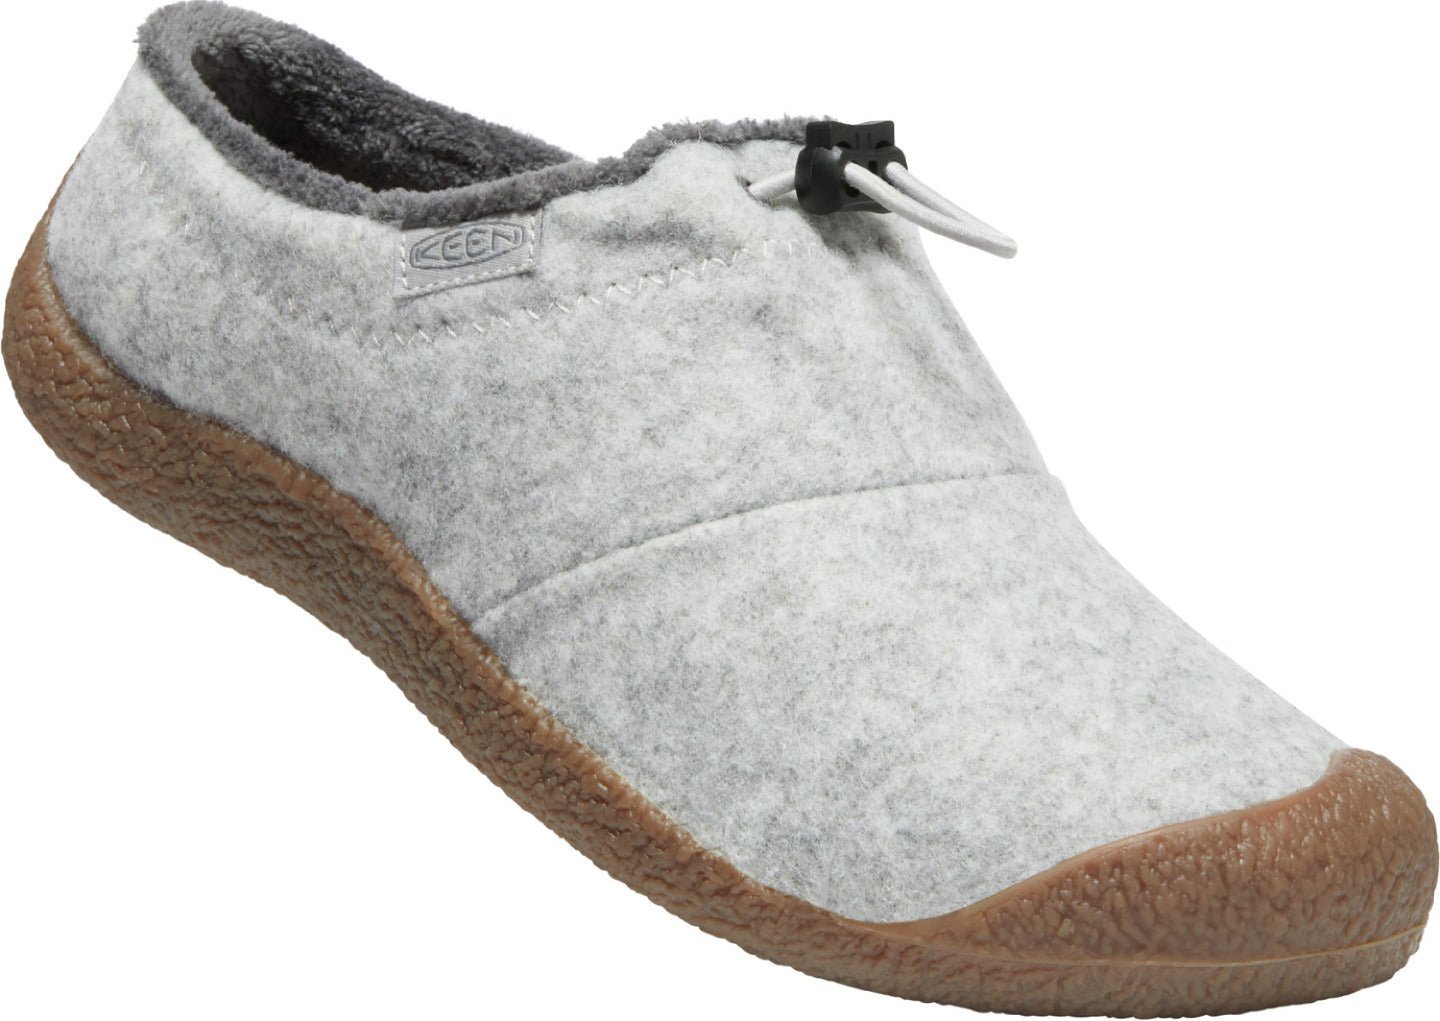 Keen Women's Howser III Slide Light Grey Wool/Vapor - Grady’s Feet Essentials - Keen